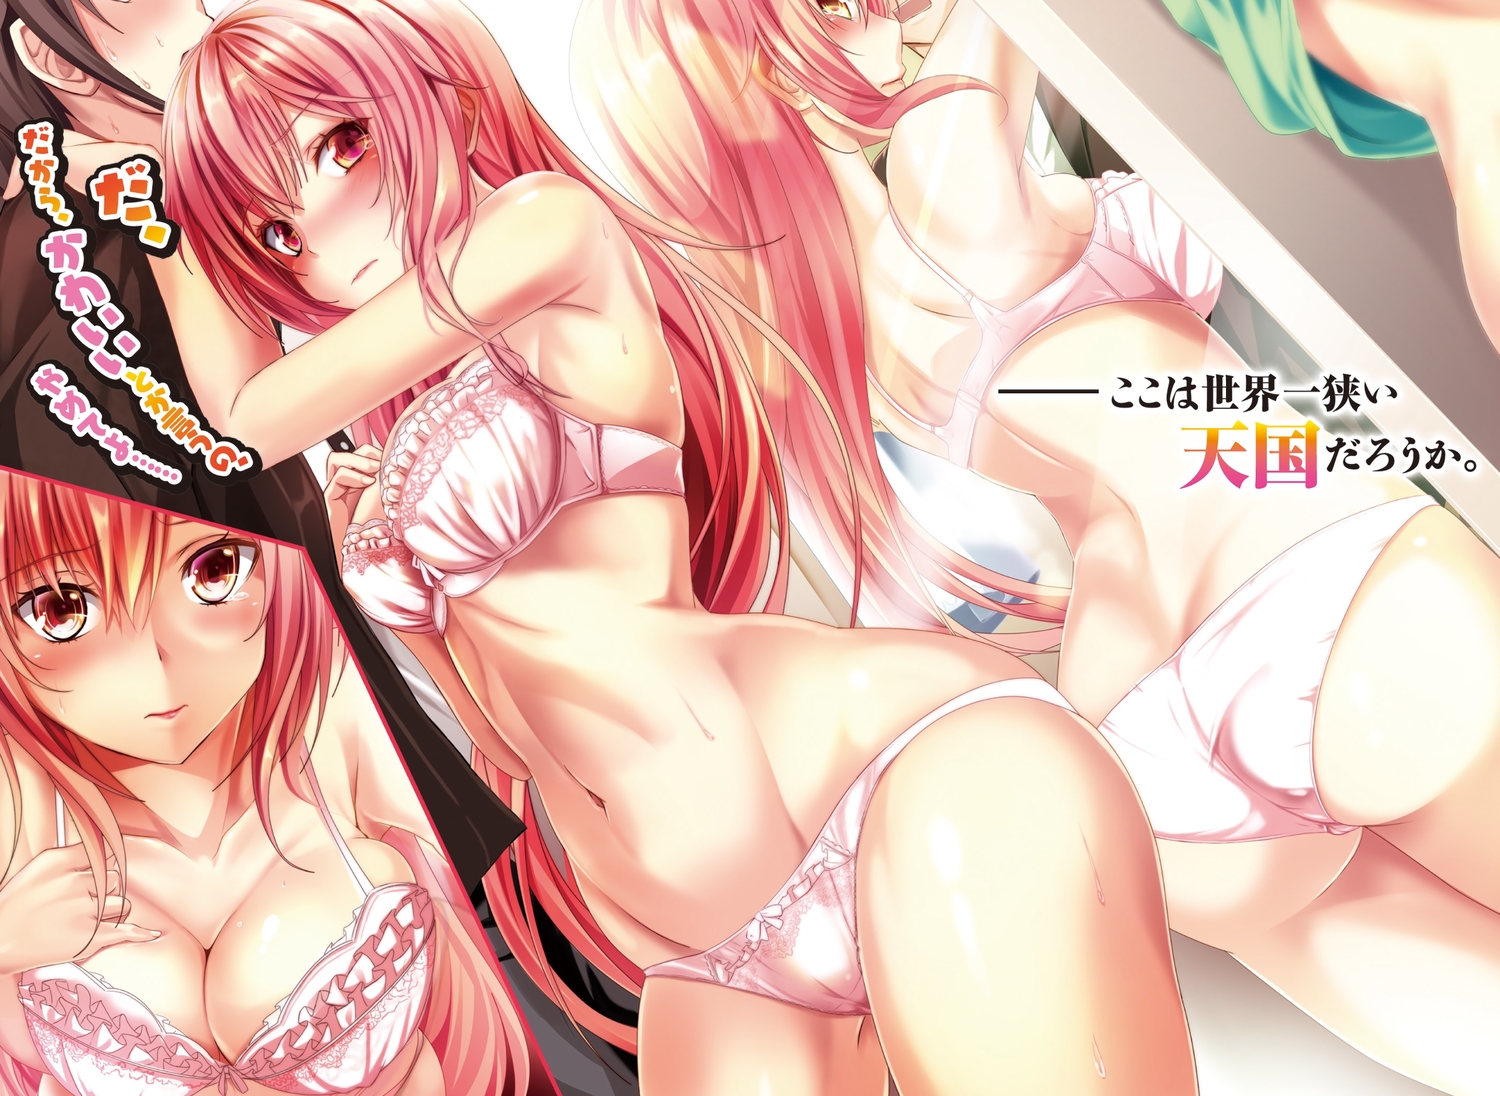 Anime 1500x1096 pink hair pink bra pink panties boobs ass belly cleavage underwear blushing long hair anime girls artwork Haruka Natsuki